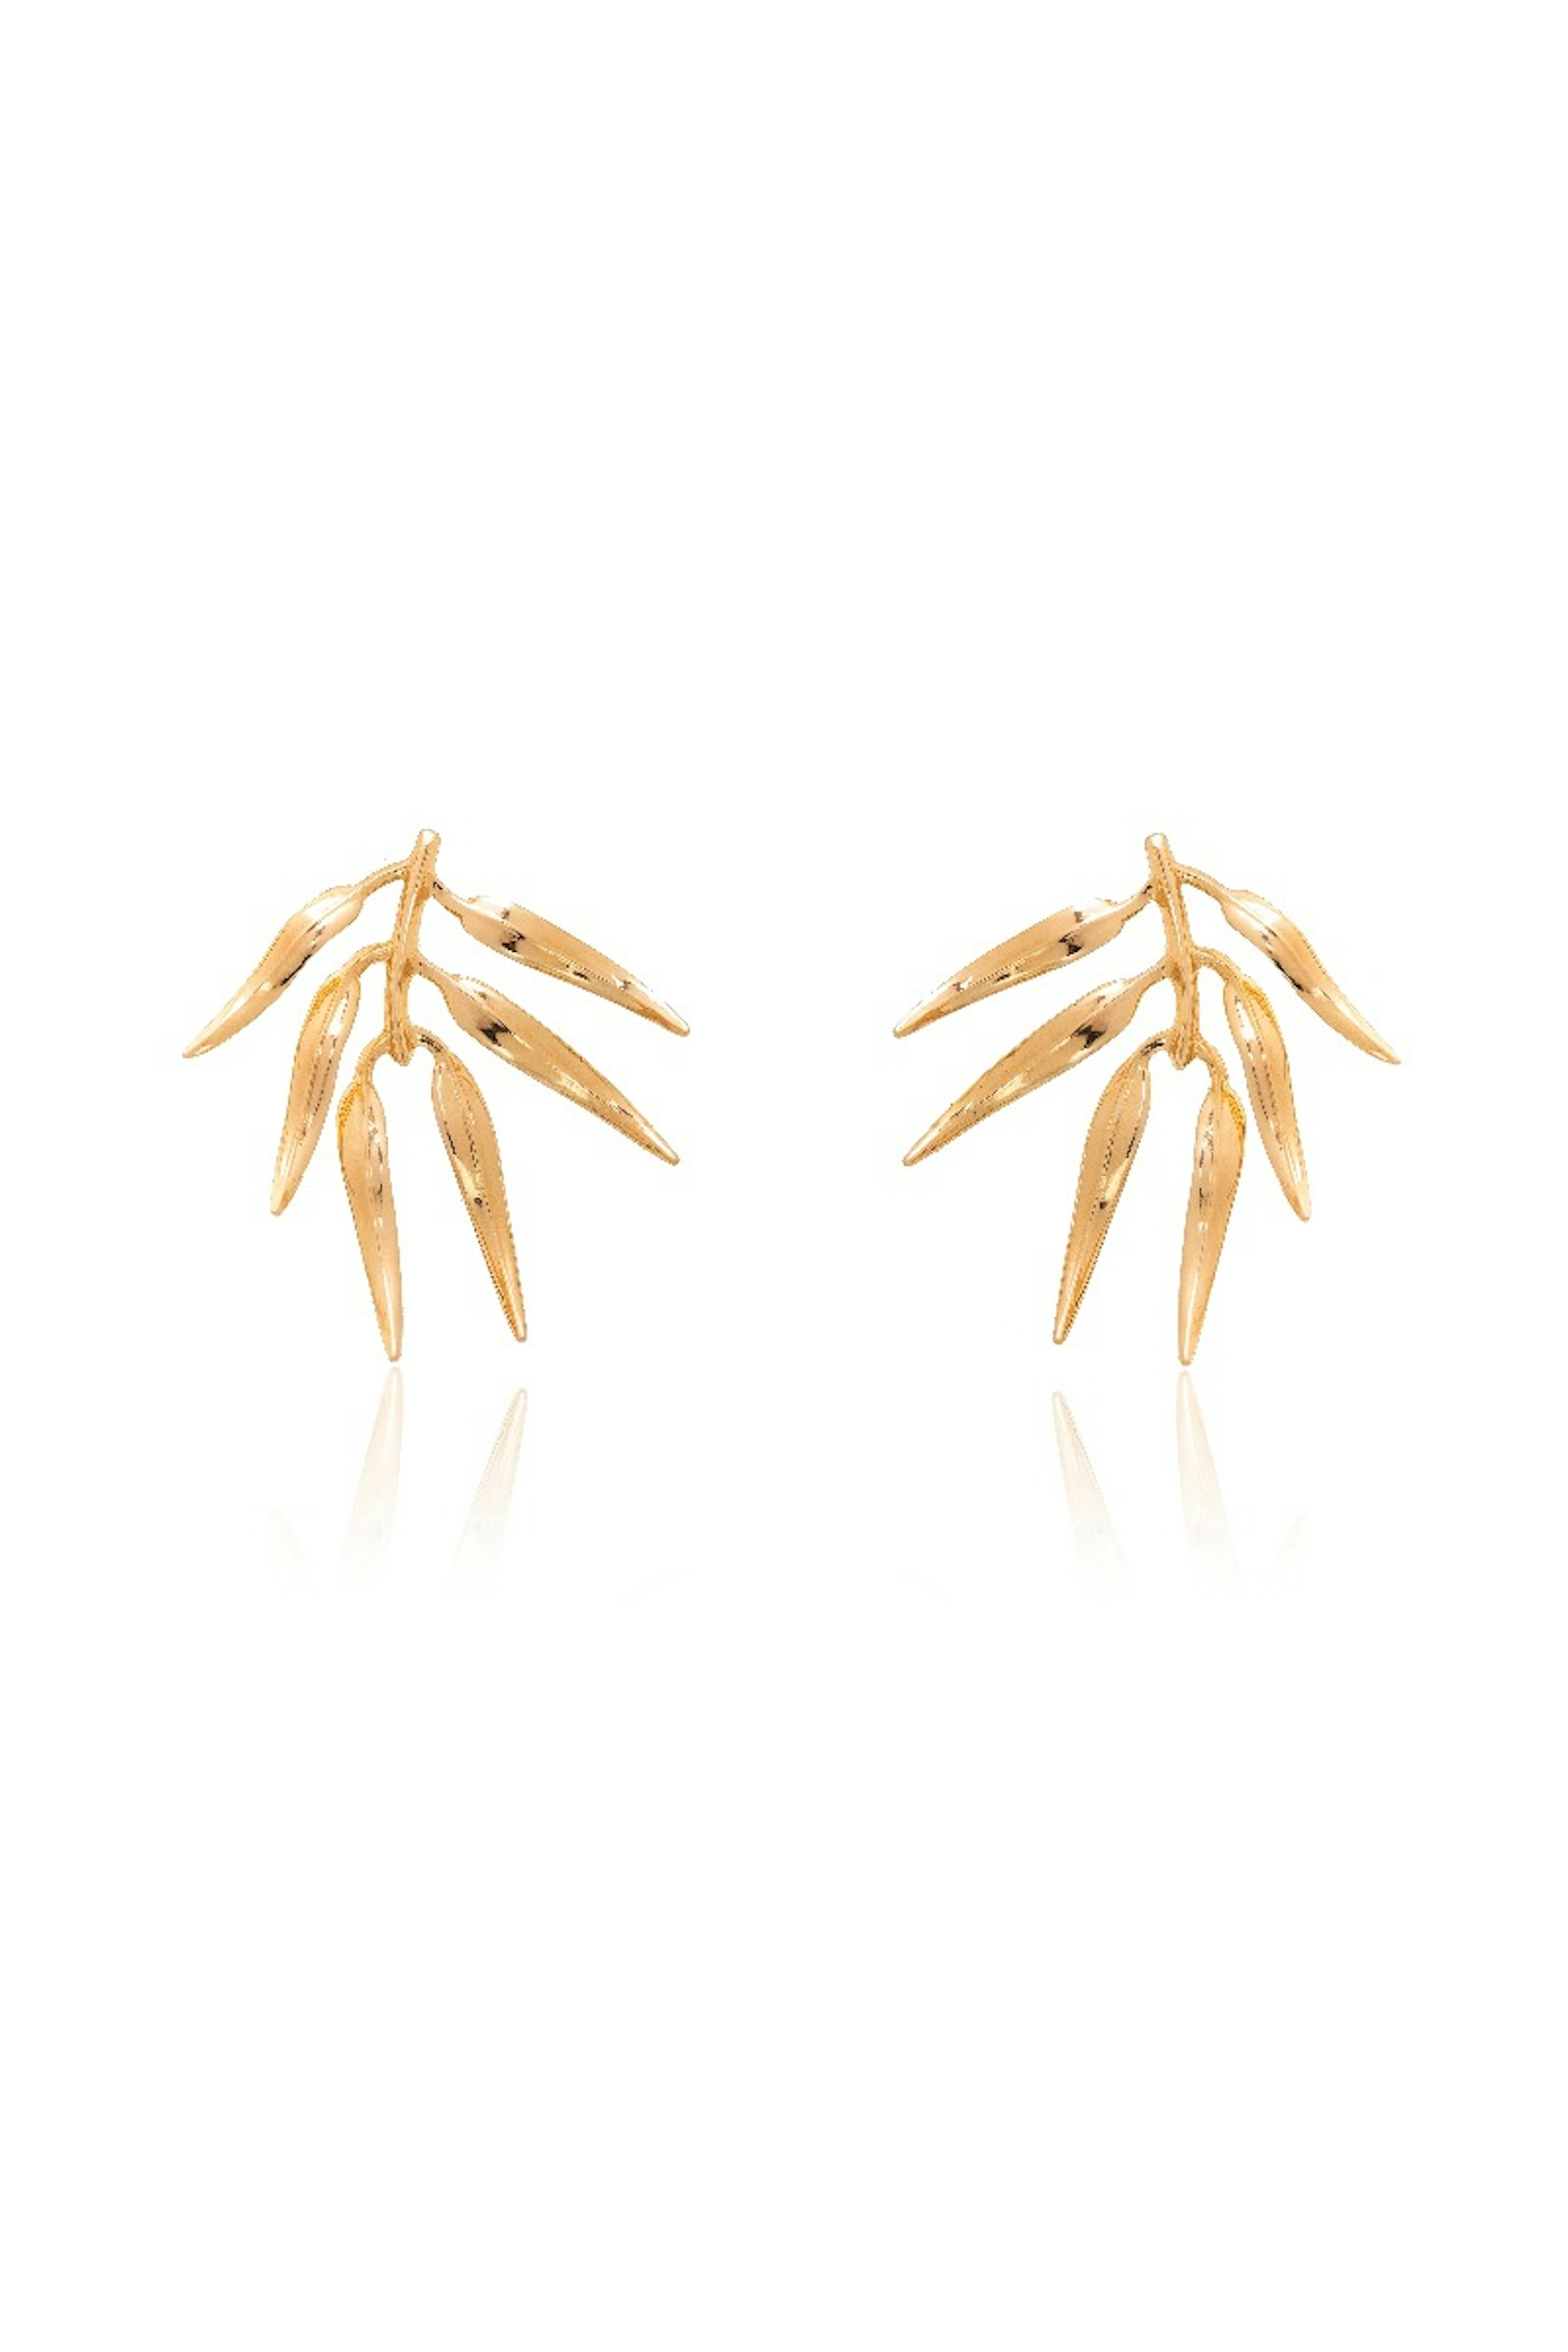 Gold Small Fern Earrings